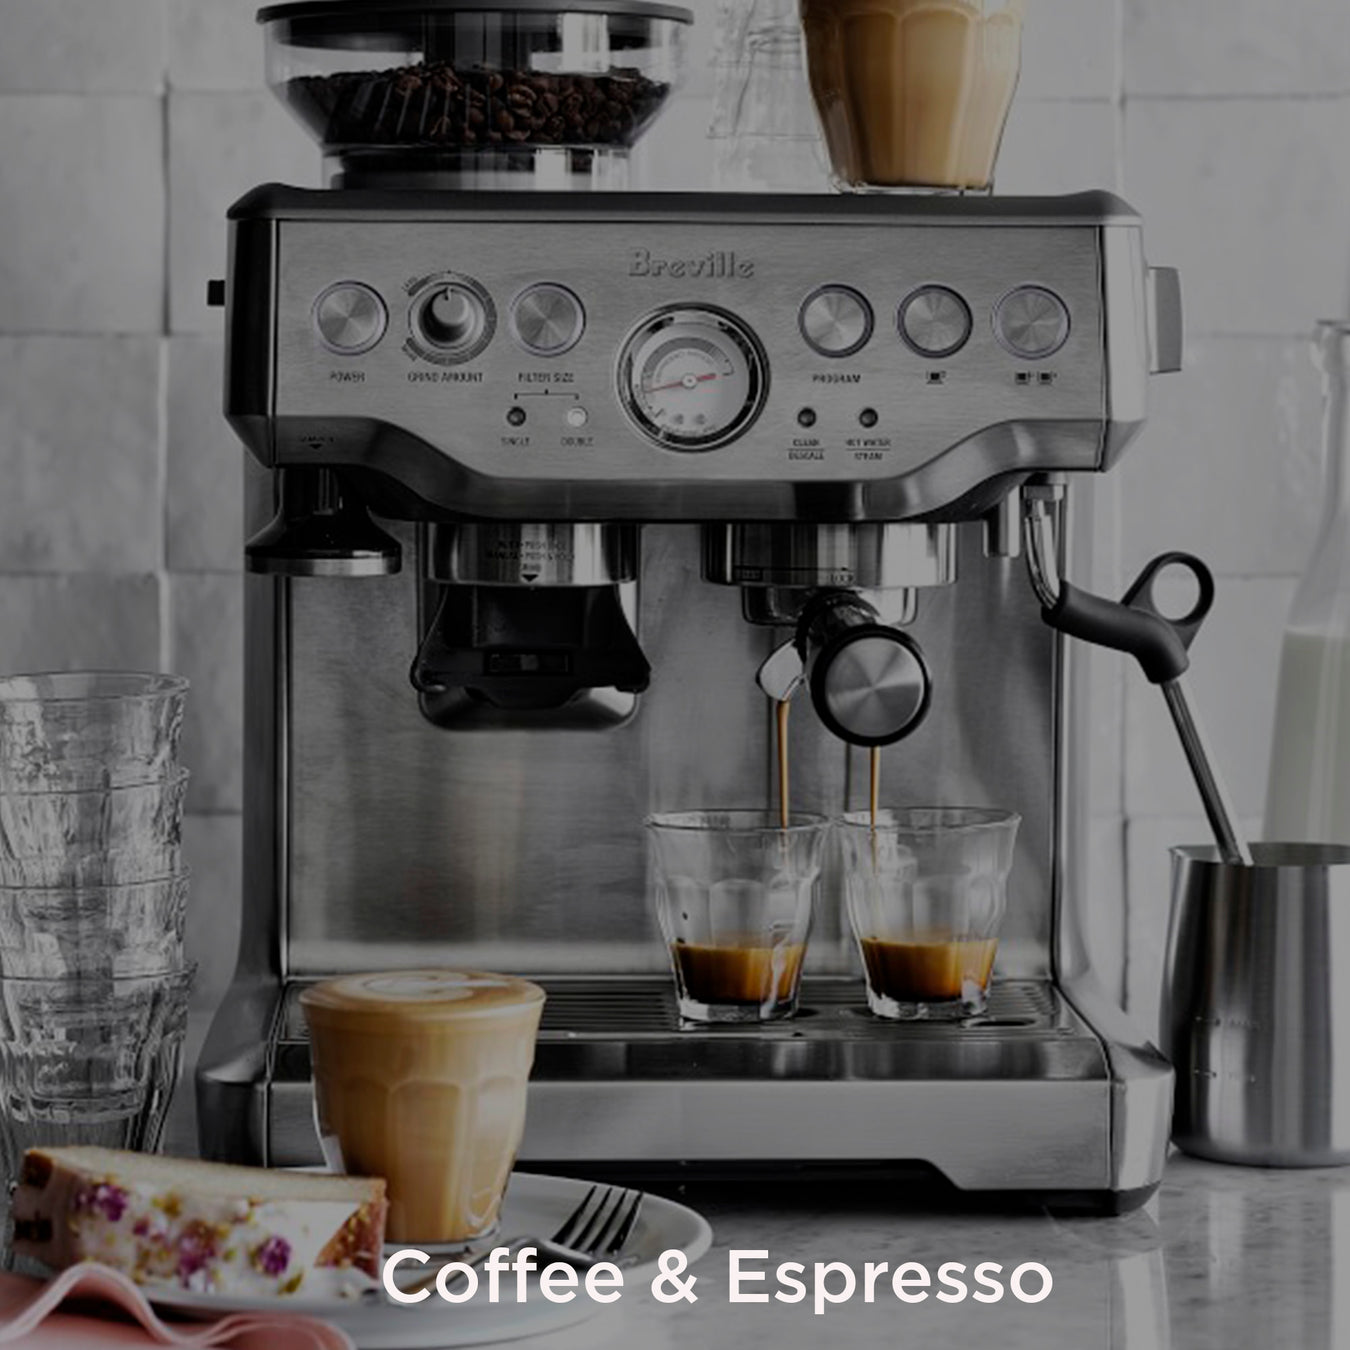 Breville Coffee & Espresso